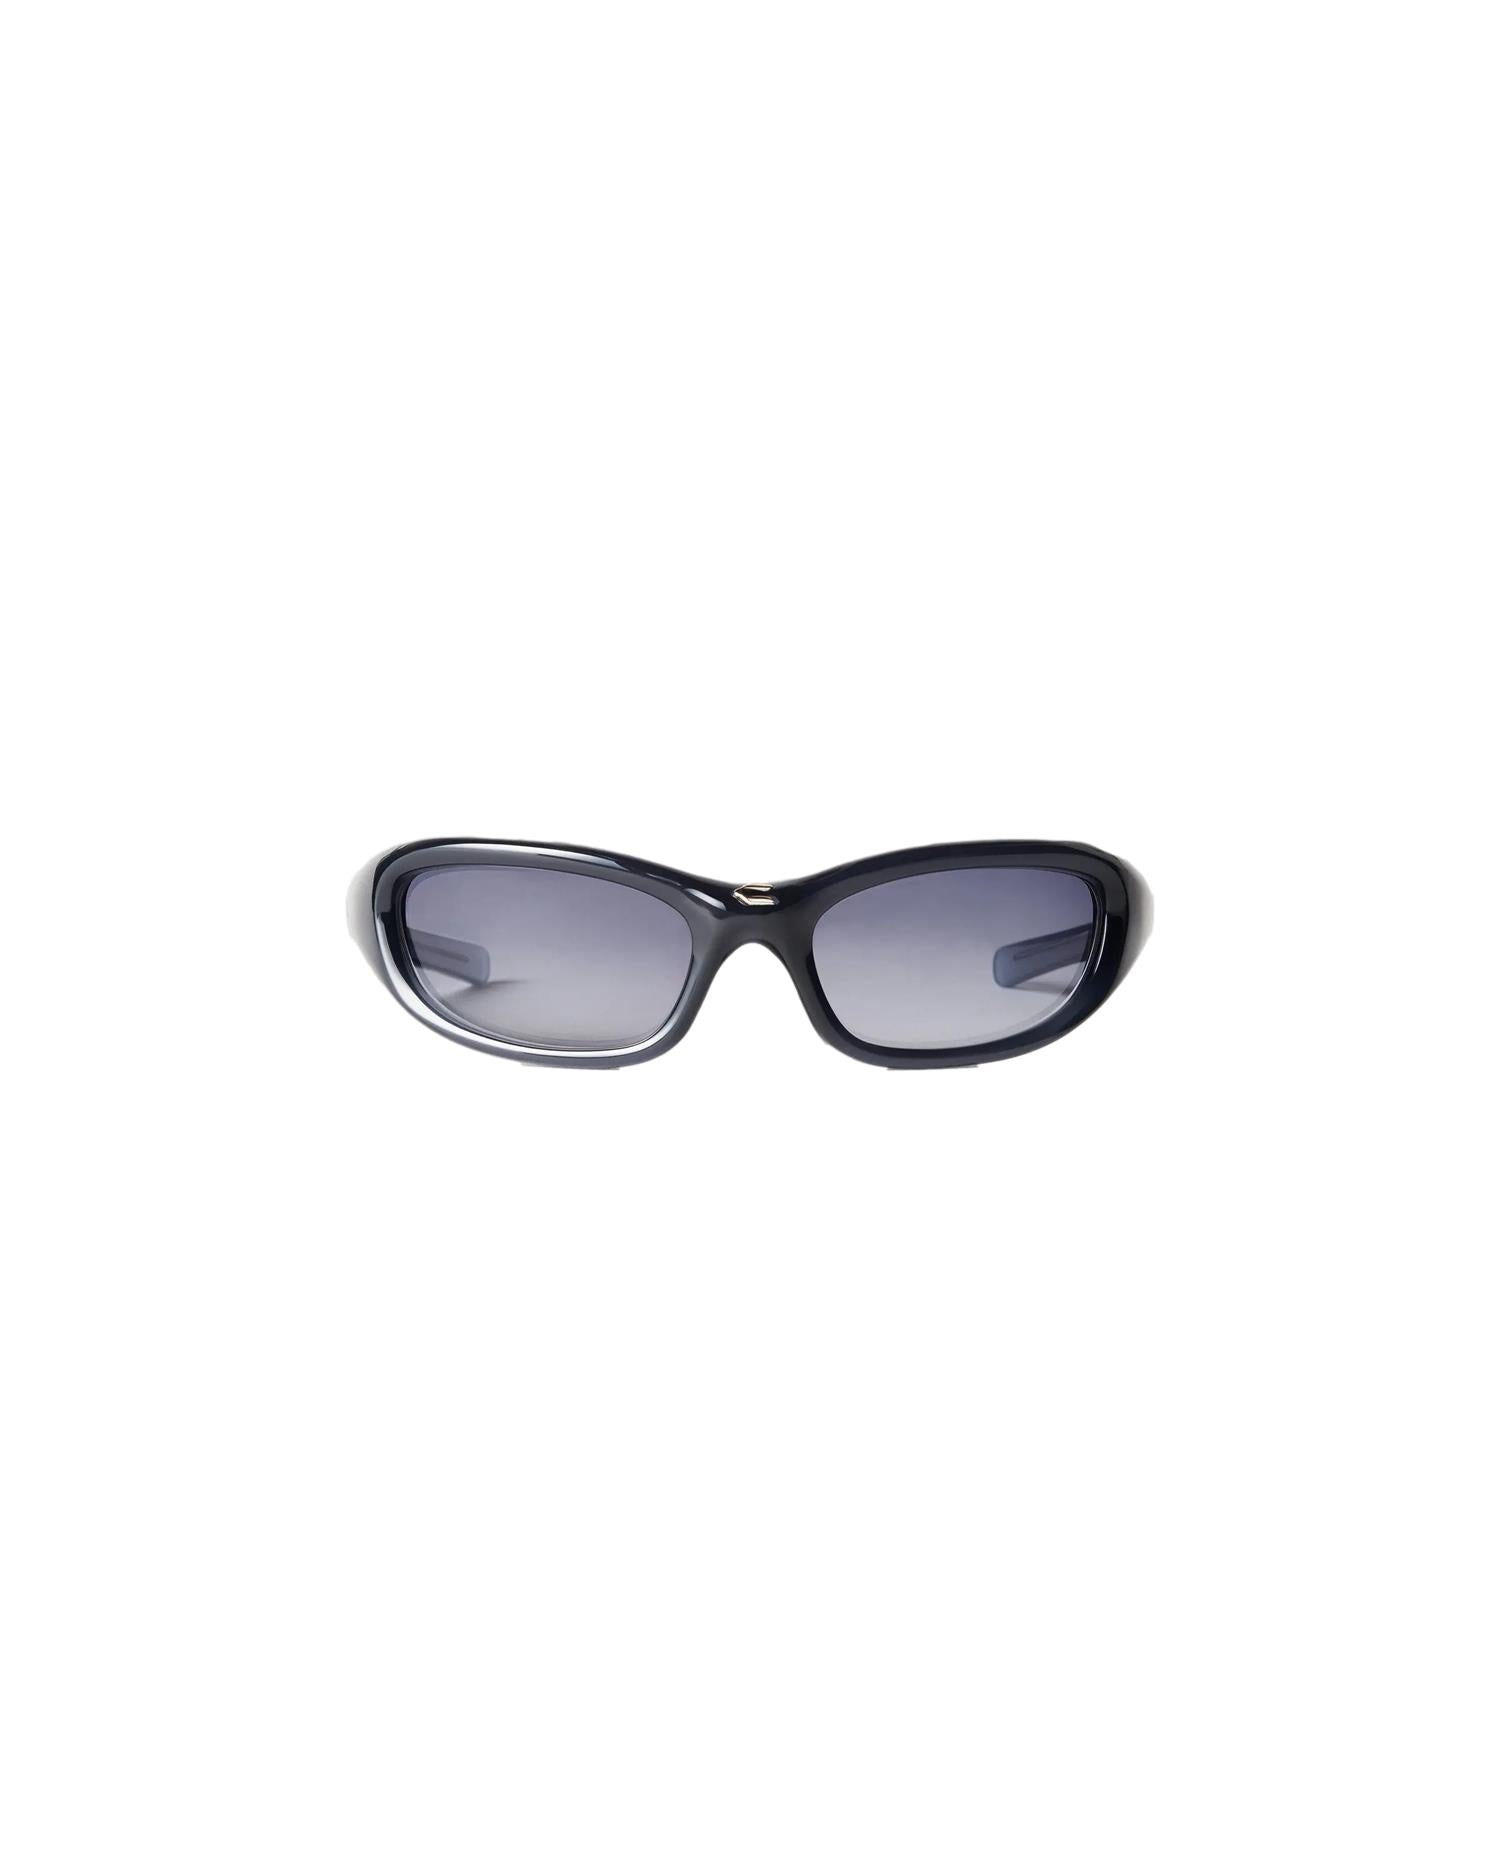 Chimi Eyewear Fog Blue Solbriller Mørkeblå - modostore.no